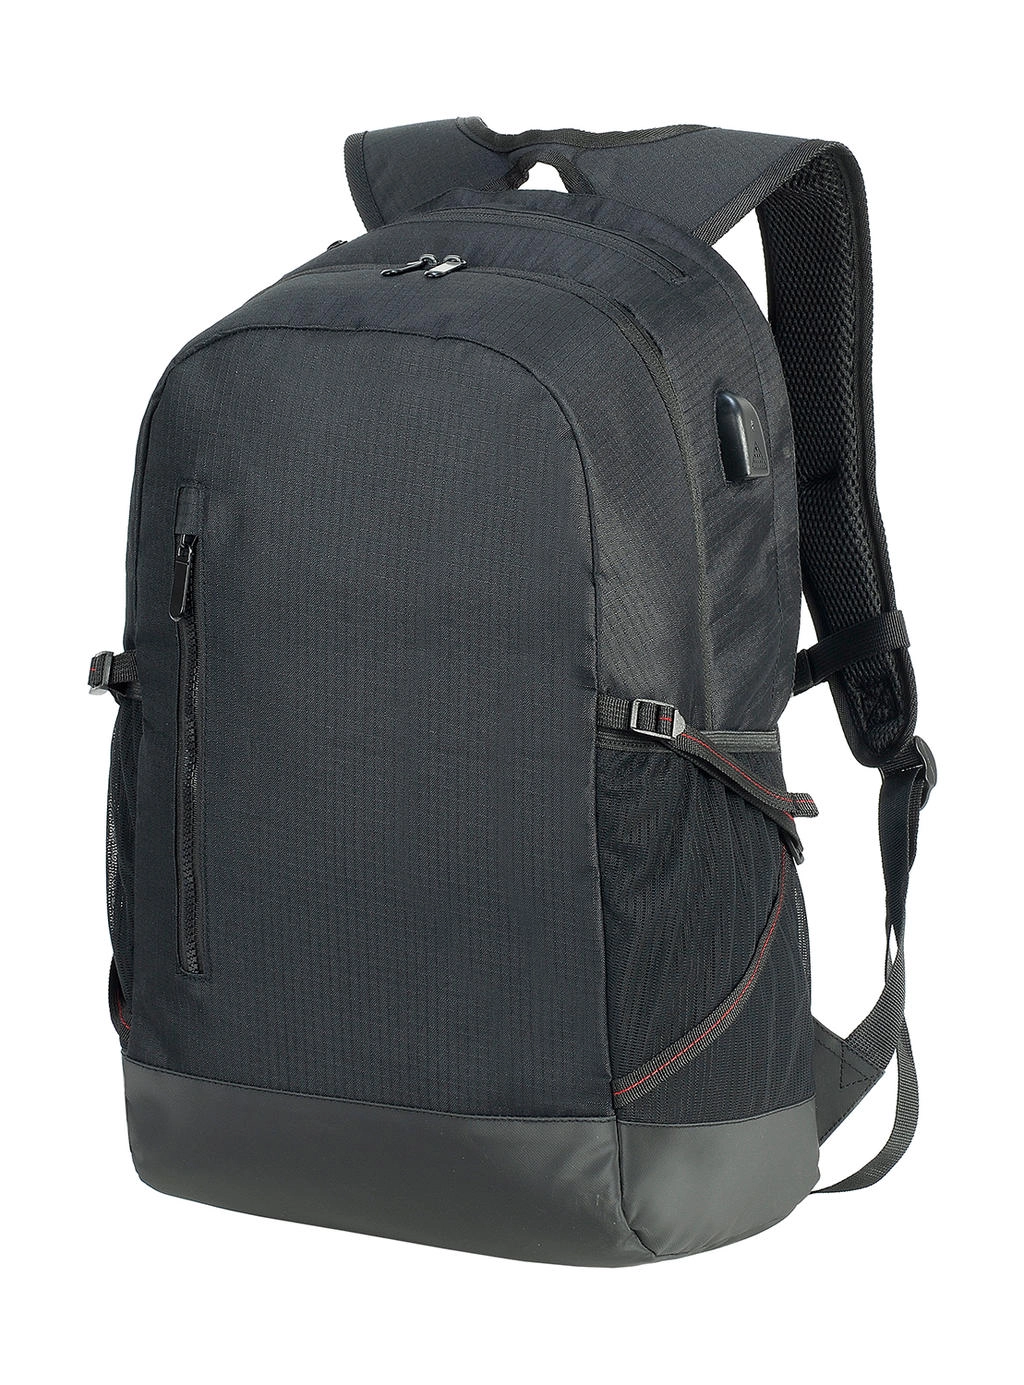 Leipzig Daily Laptop Backpack zum Besticken und Bedrucken in der Farbe Black/Black mit Ihren Logo, Schriftzug oder Motiv.